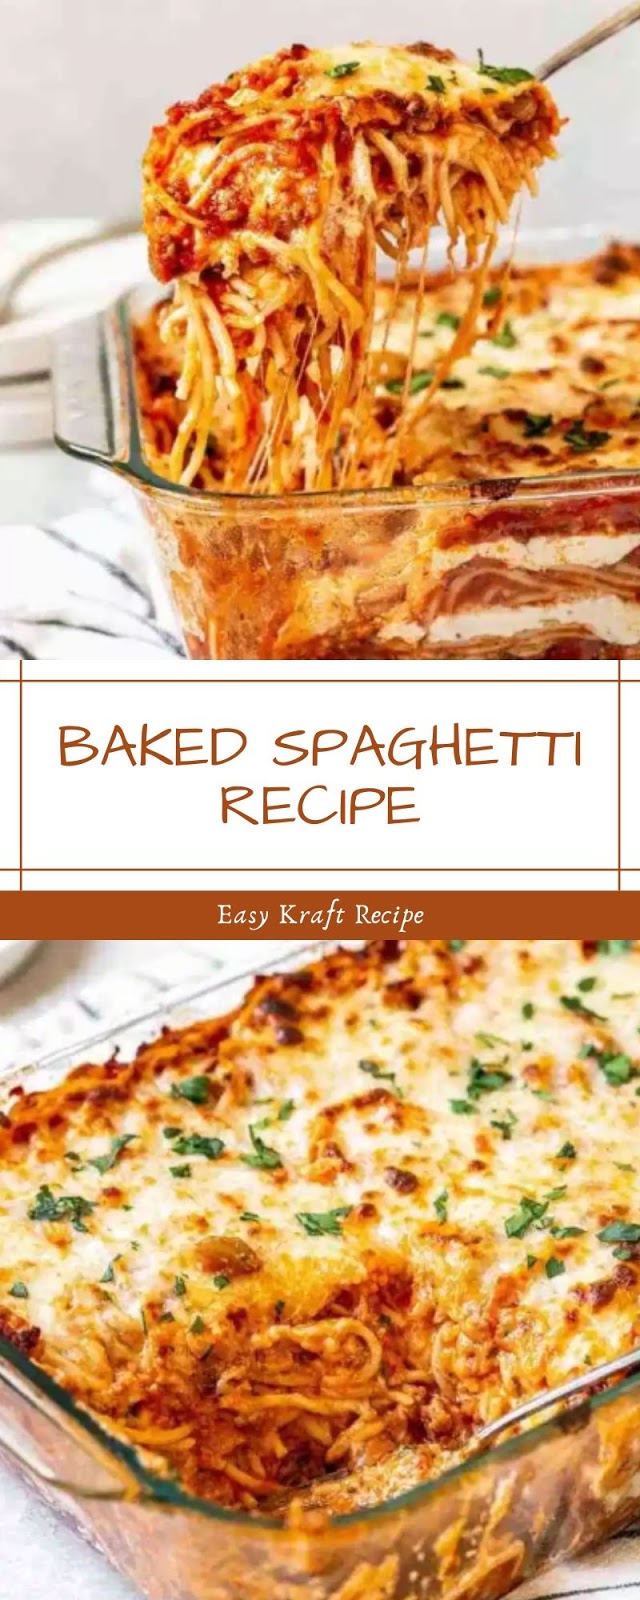 BAKED SPAGHETTI RECIPE - Easy Kraft Recipes